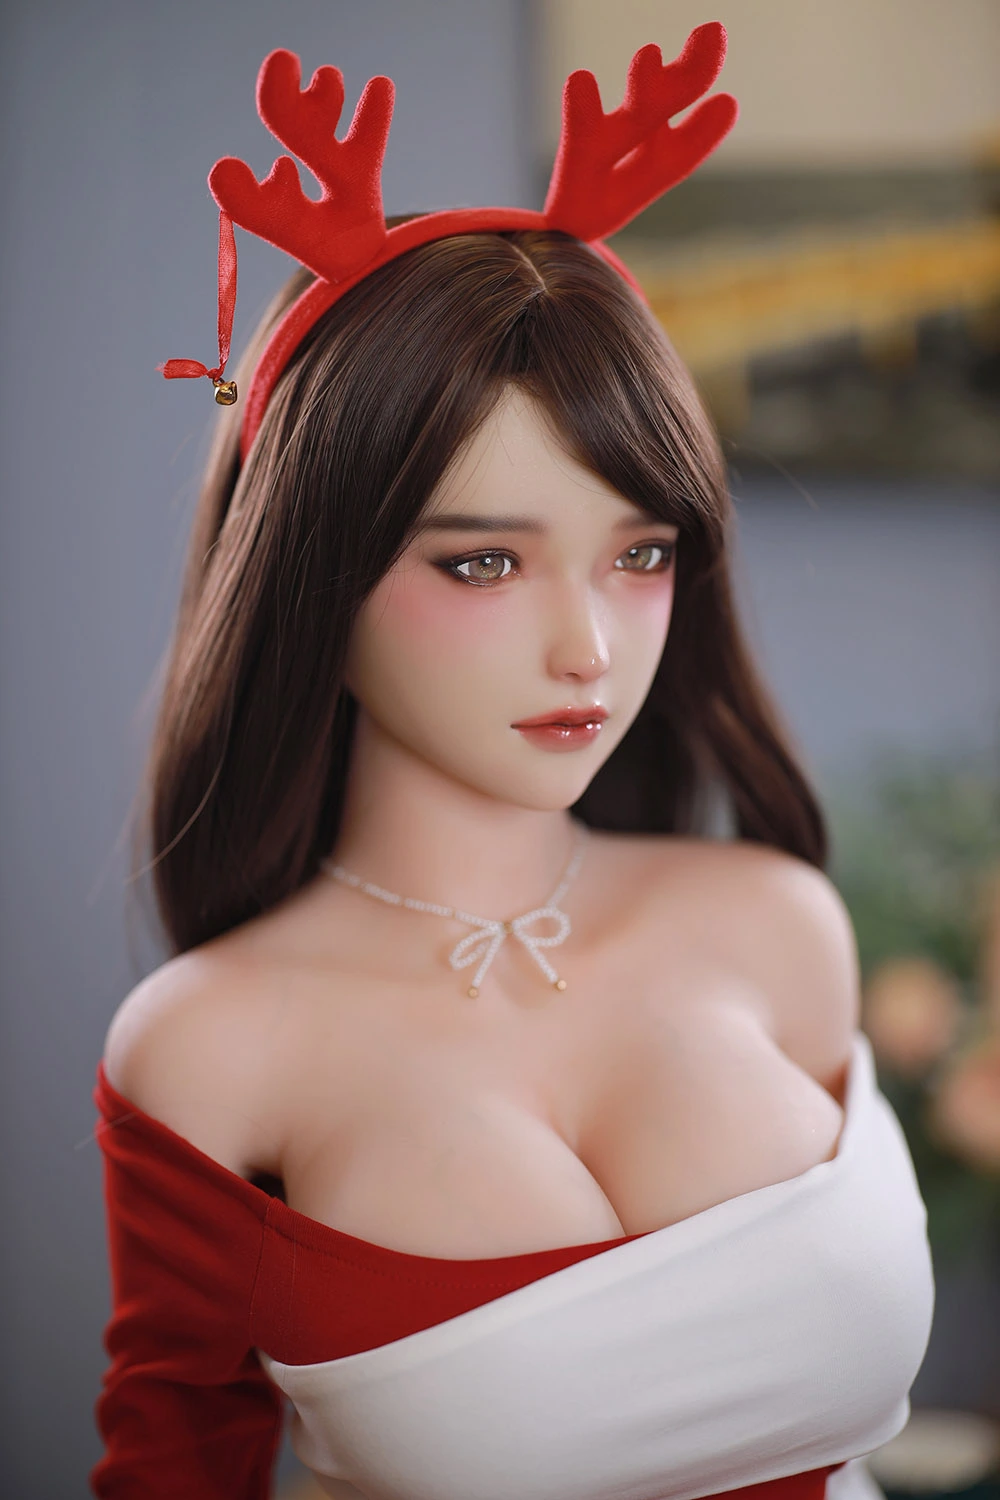  Christmas gift sex doll